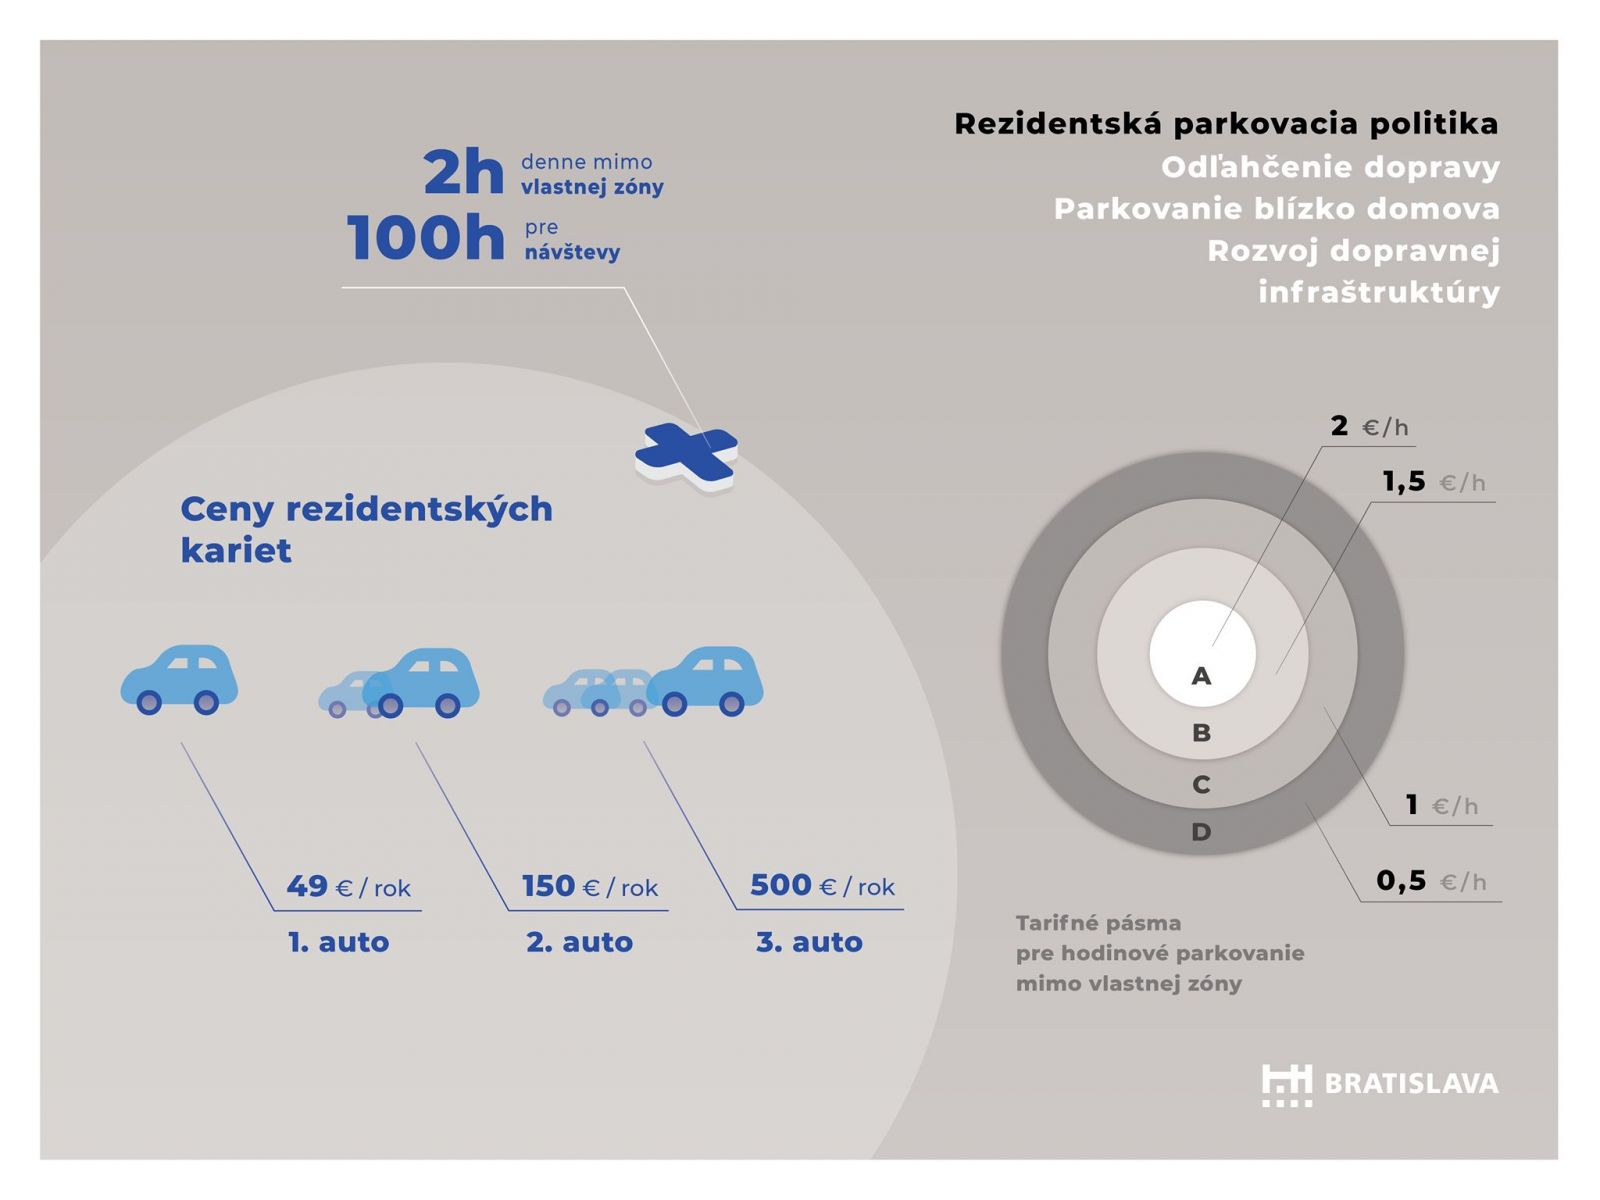 Cépečkári nebudú stáť zadarmo, niektorí vodiči zaplatia aj 500 €. Parkovanie v Bratislave prejde veľkými zmenami